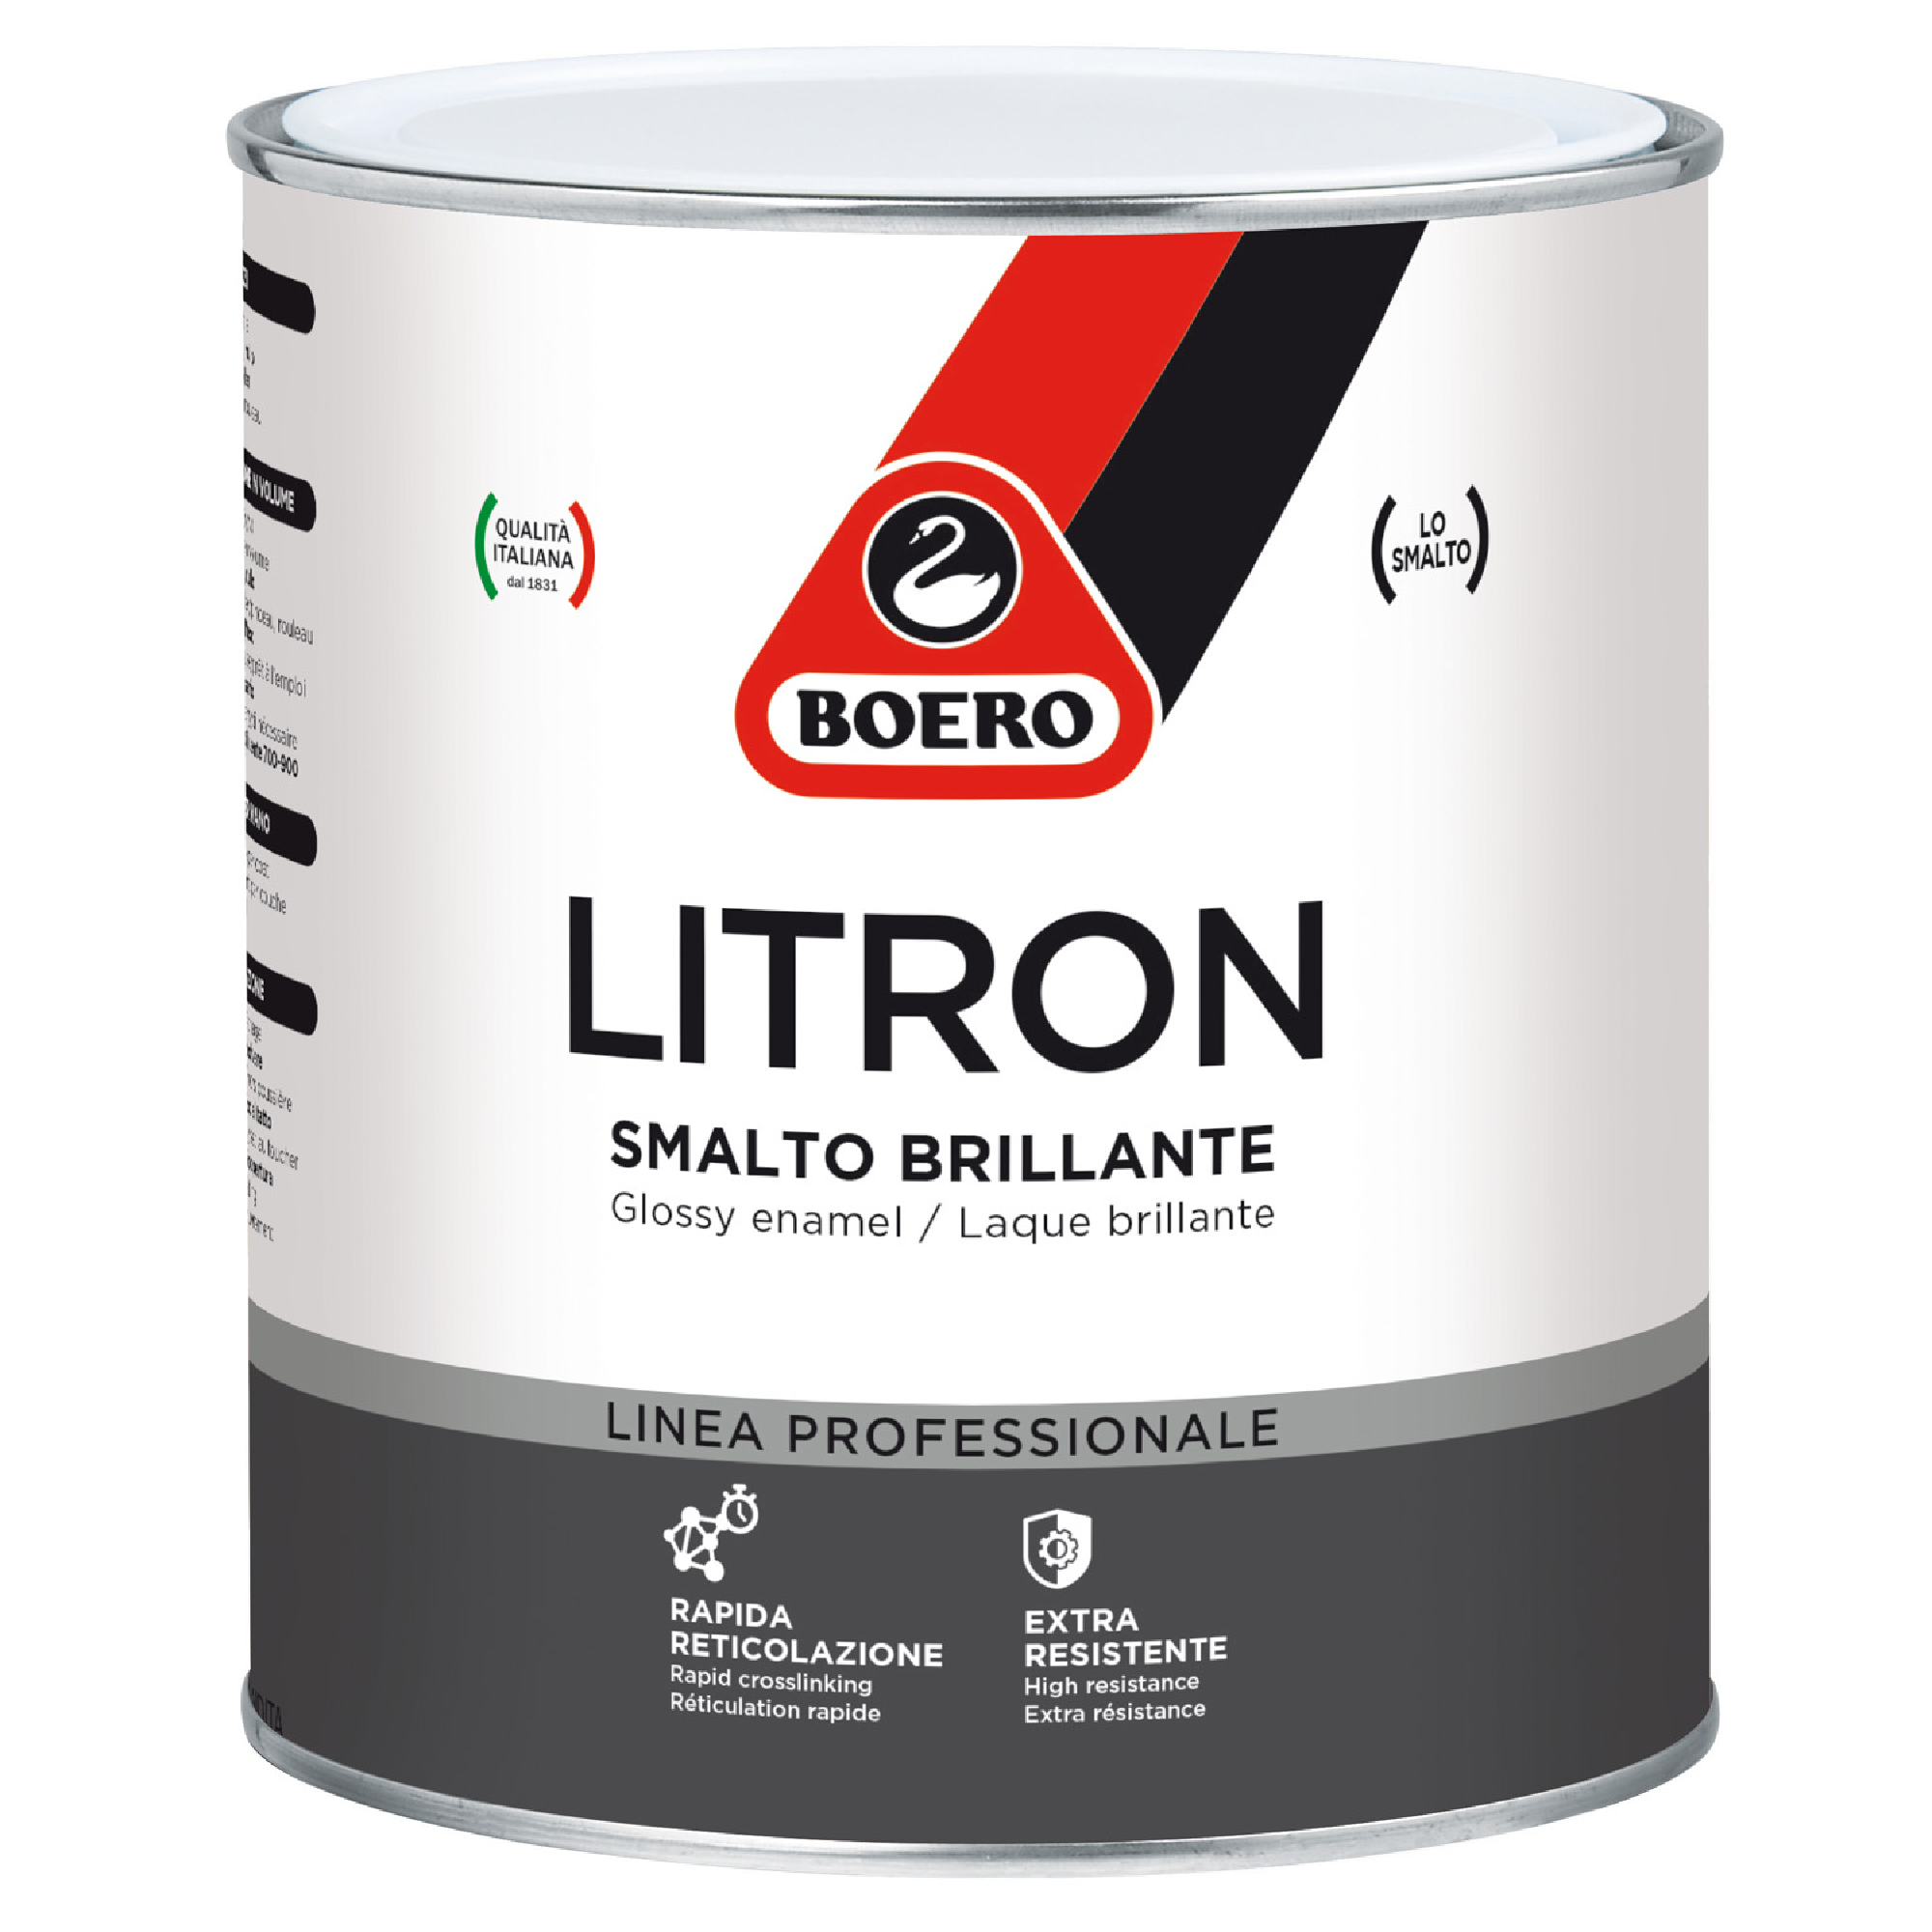 Smalto Brillante LItron per Ferro e Legno 2.5L